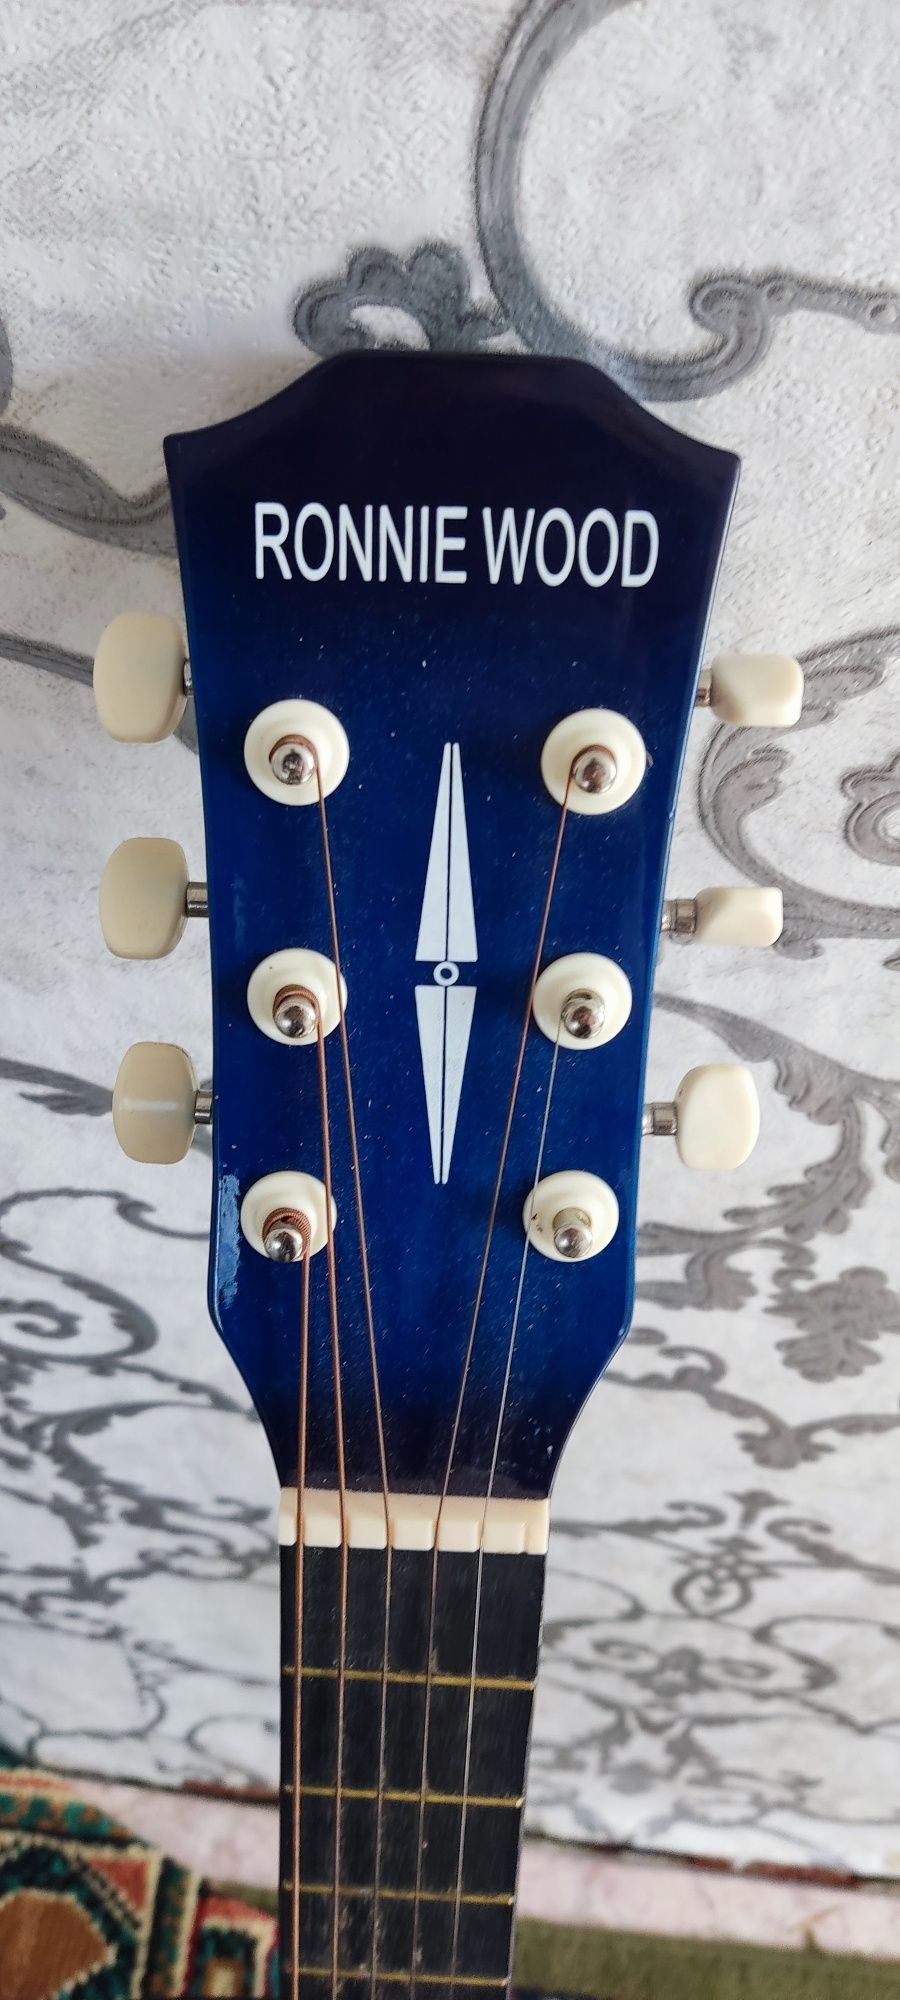 Продам гитару Ronnie wood. Возможен обмен на скоростной велосипед